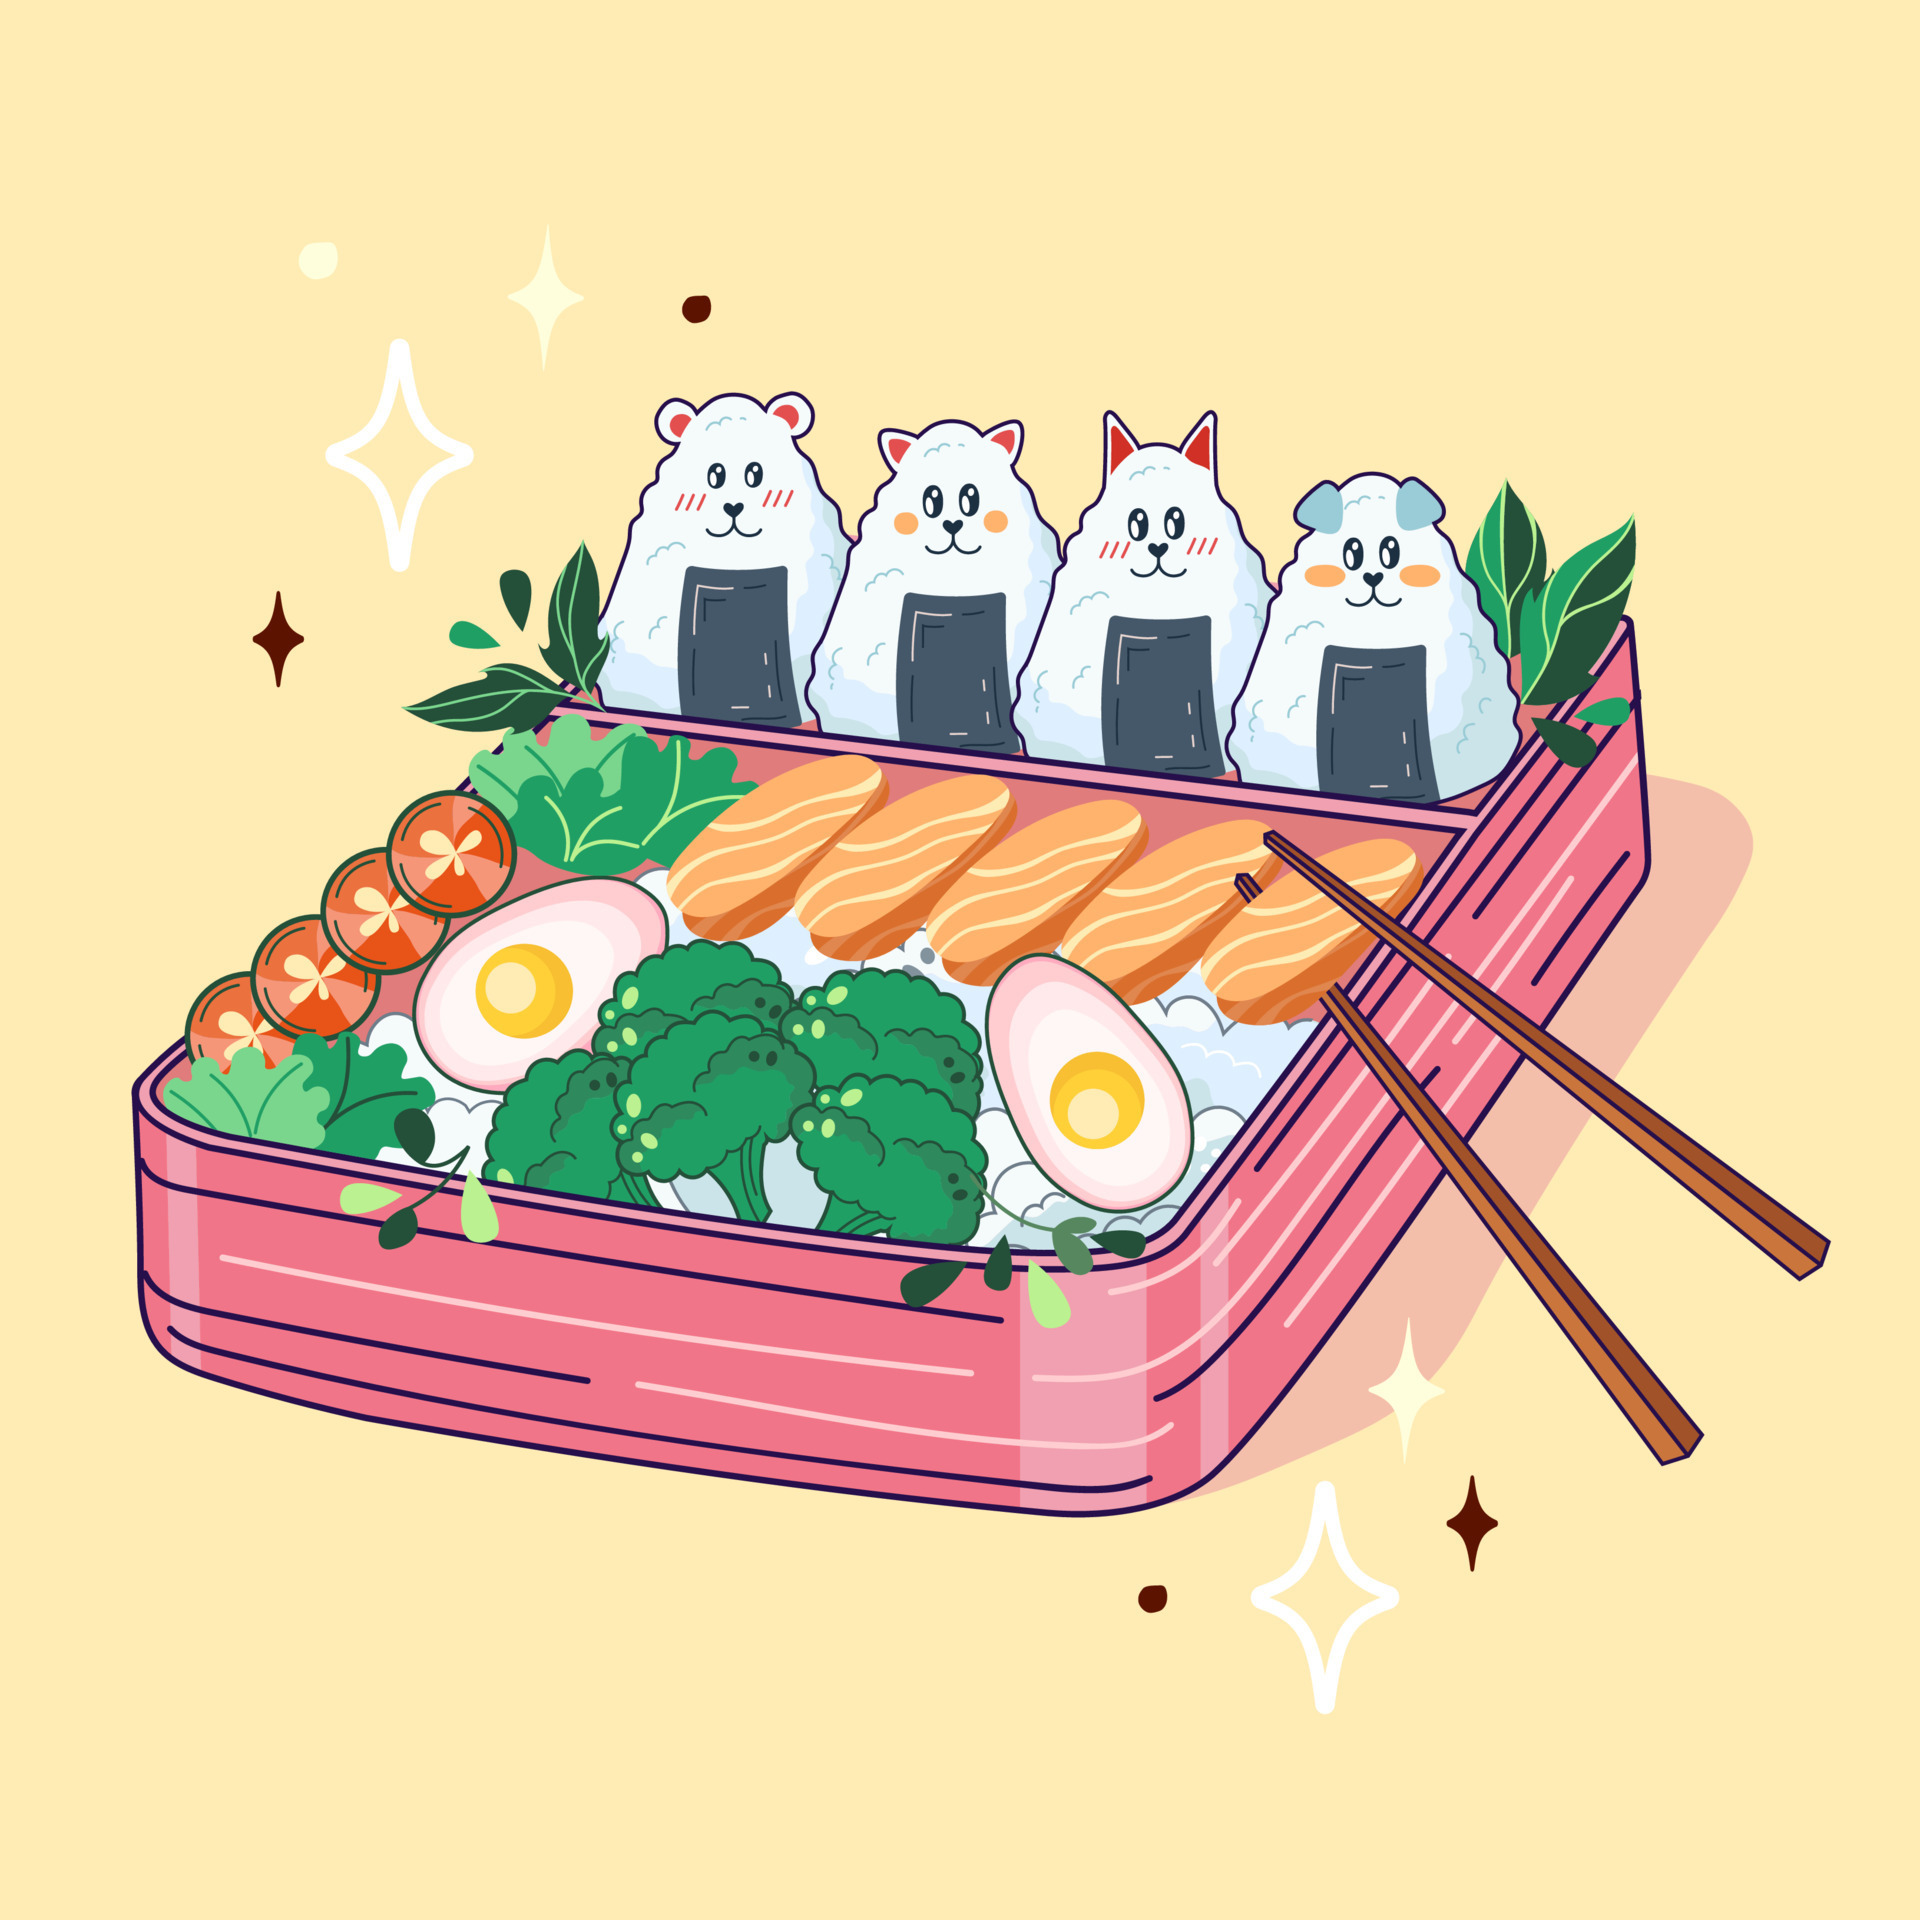 Anime Food: Photo  Japanese food illustration, Anime bento, Cute food art